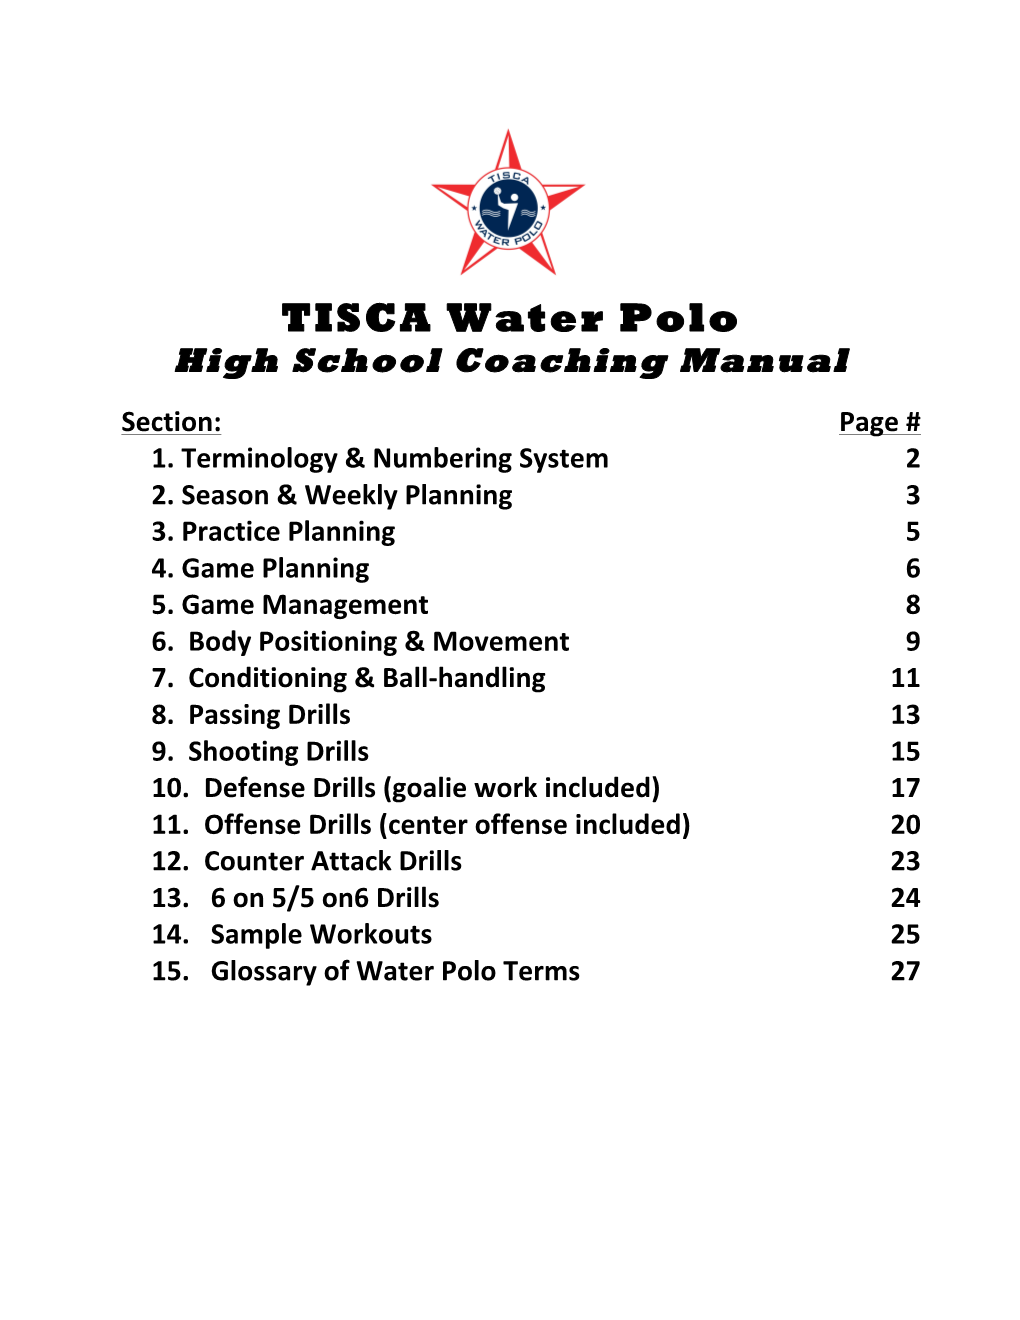 TISCA Water Polo-High School Coaching Manual